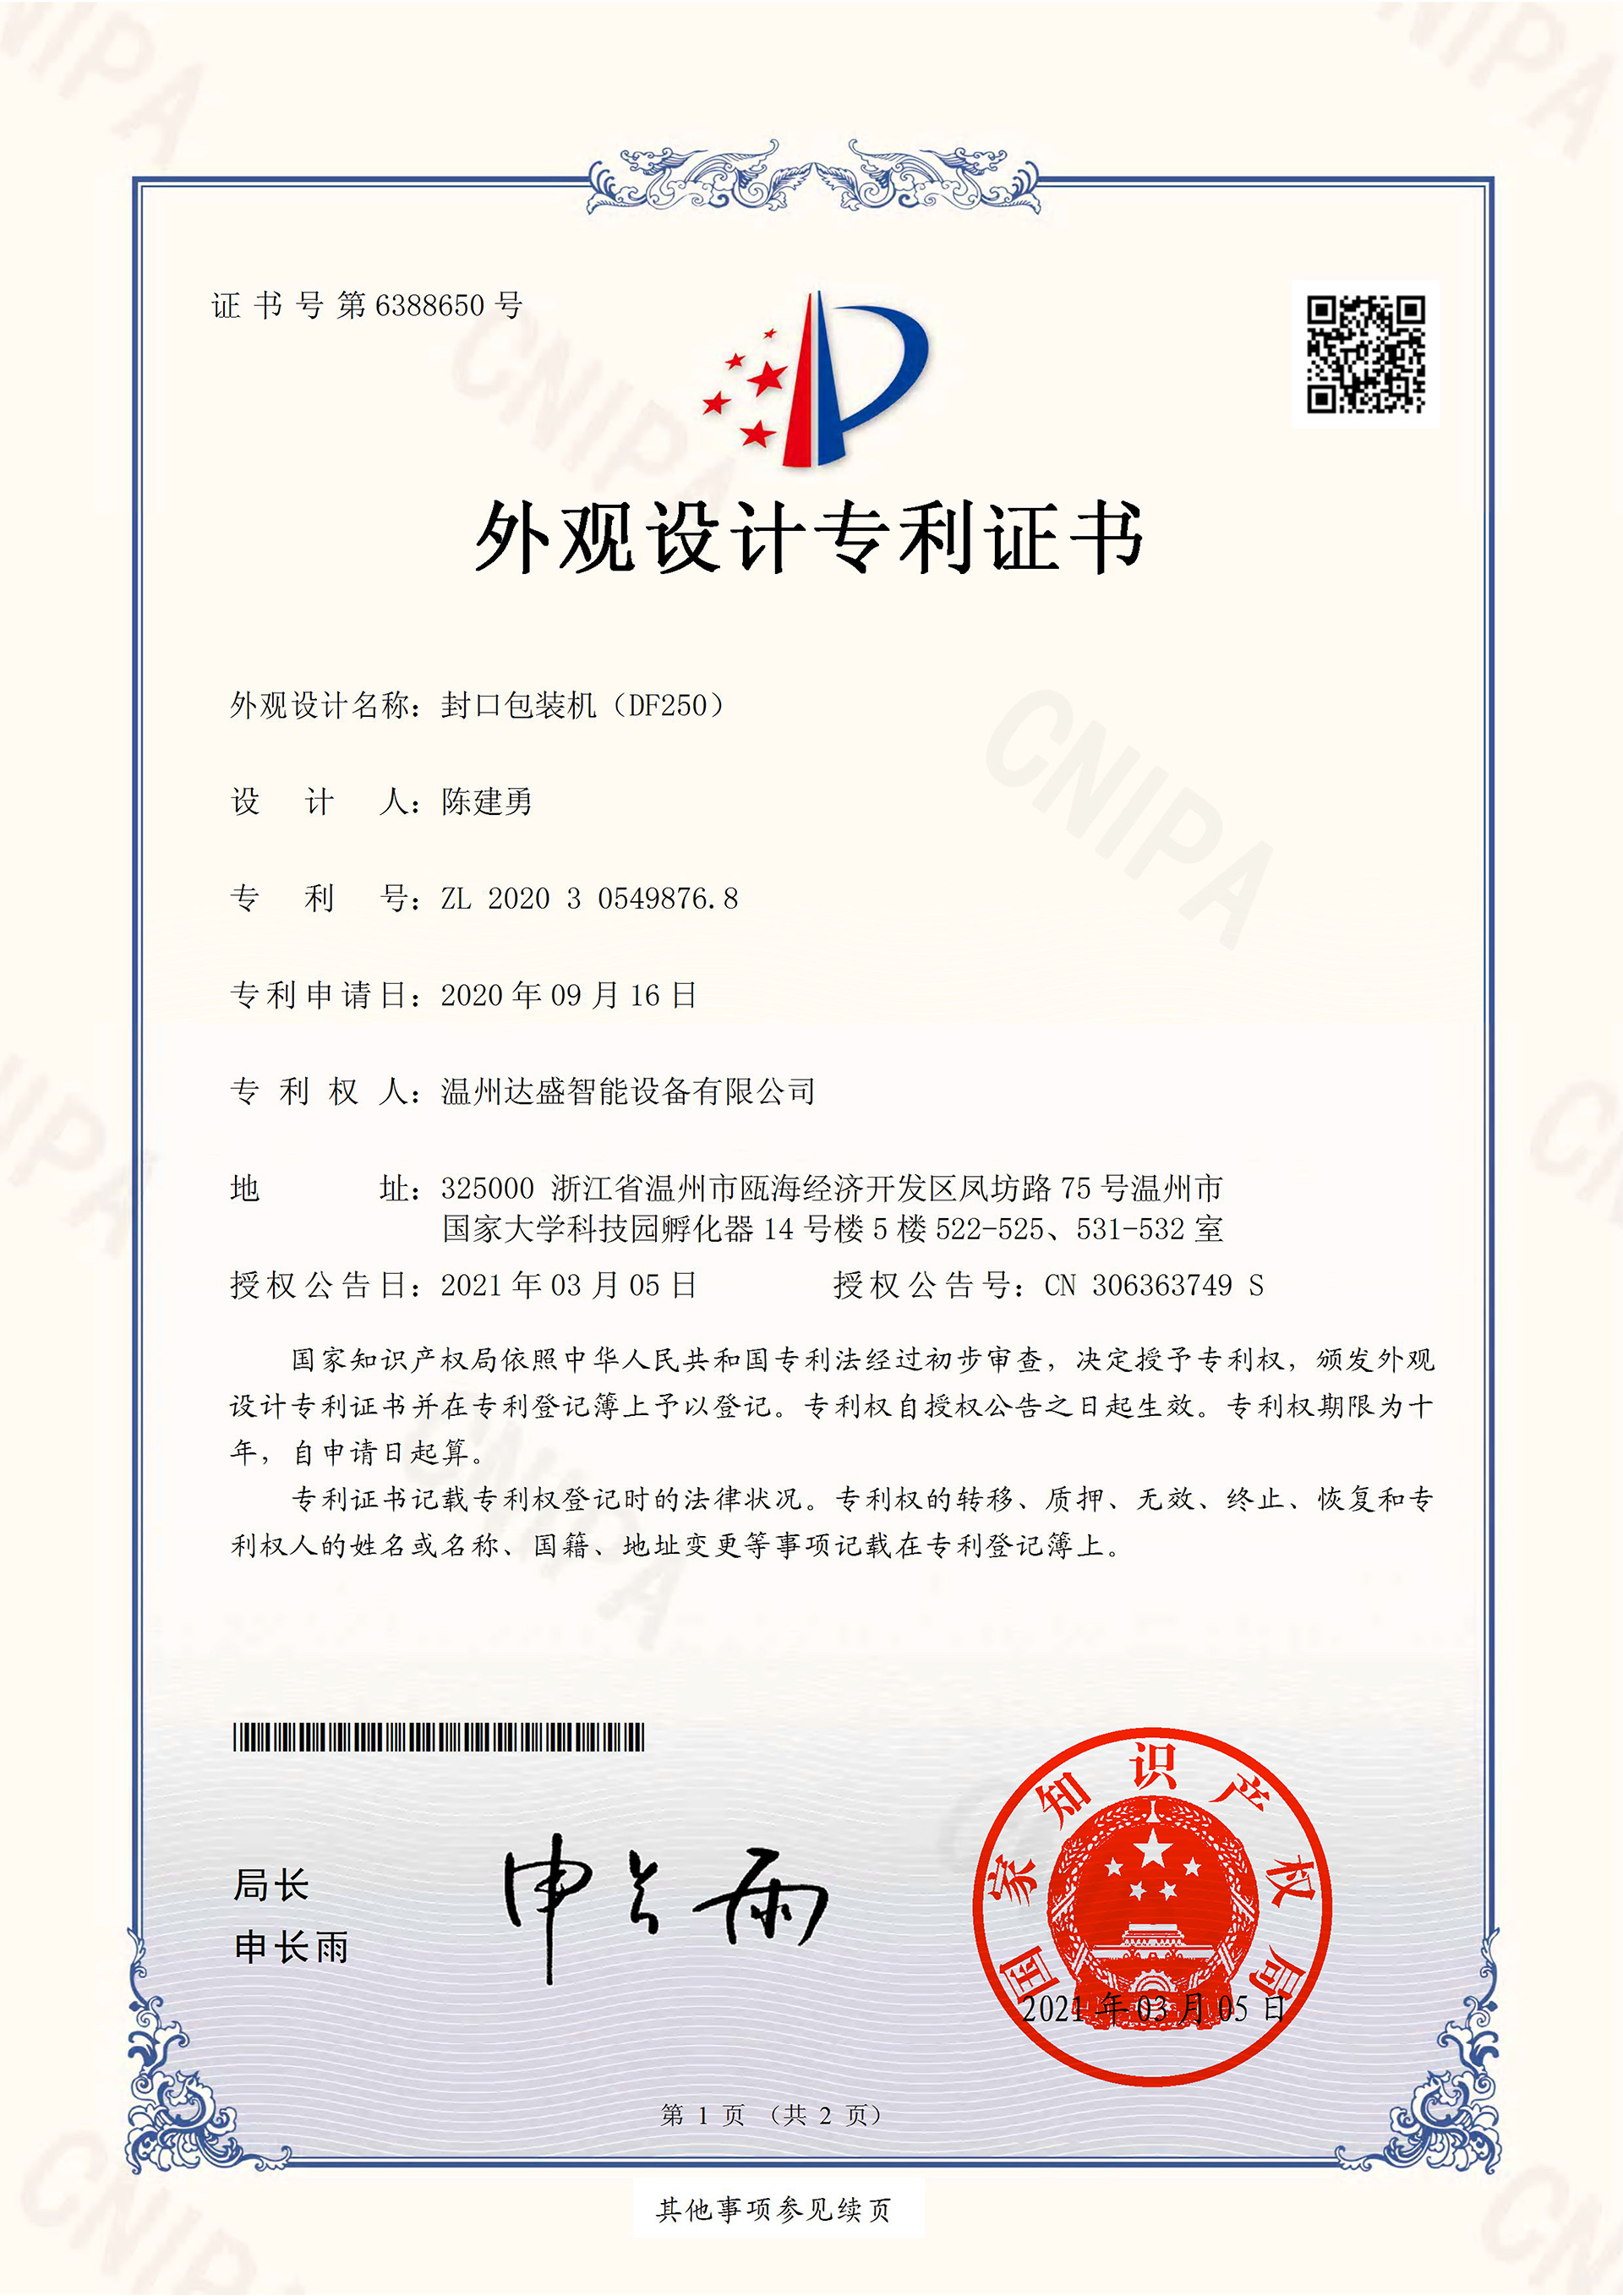 封口包装机（DF250）-外观设计专利证书(签章)-1